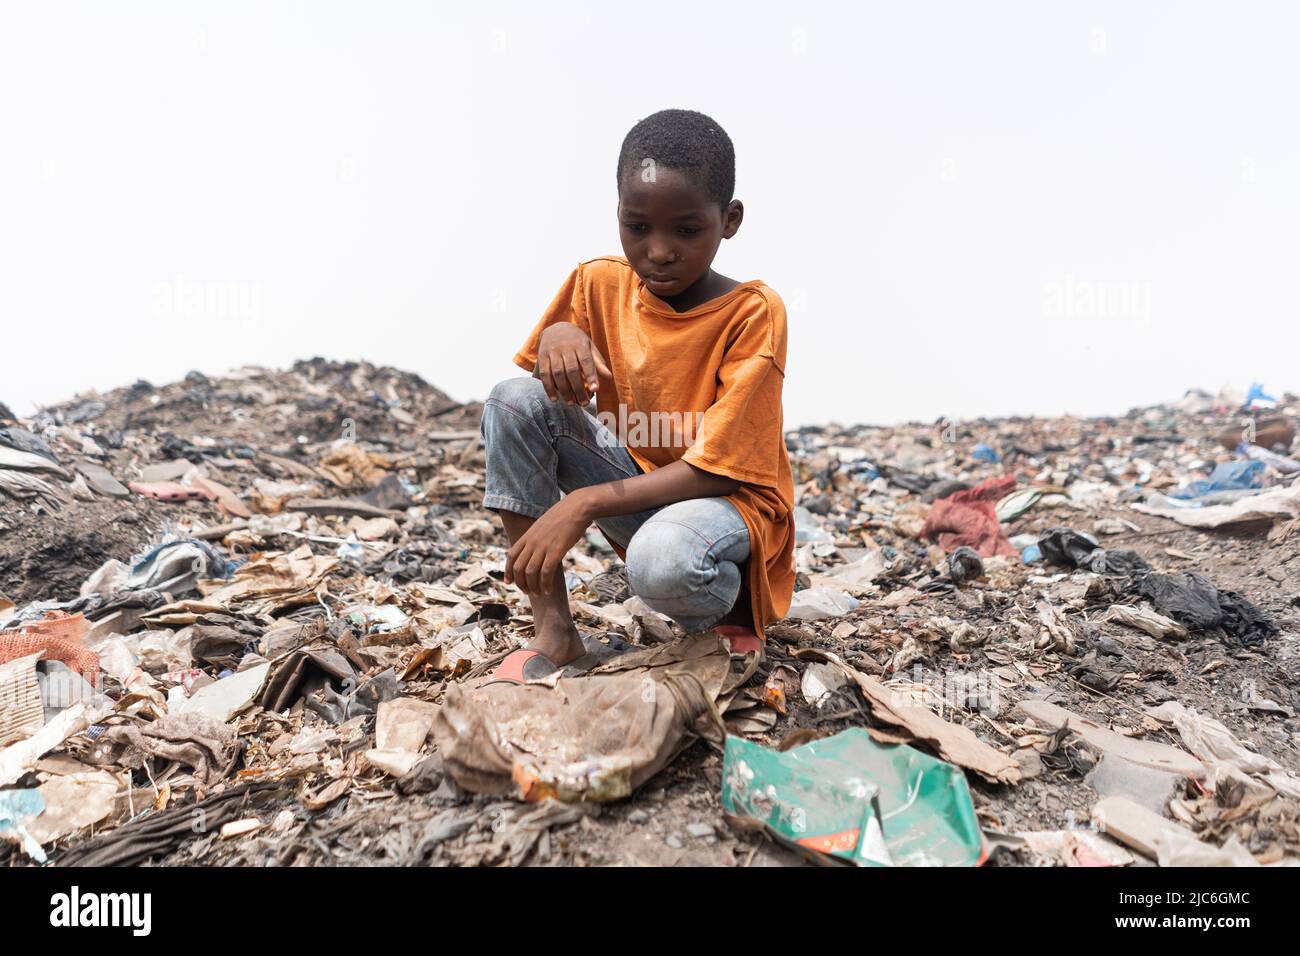 Verzweifeltes afrikanisches Kind, das auf einer Müllhalde sitzt und den Plastikmüll ansieht. Konzept der Umweltgerechtigkeit. Stockfoto